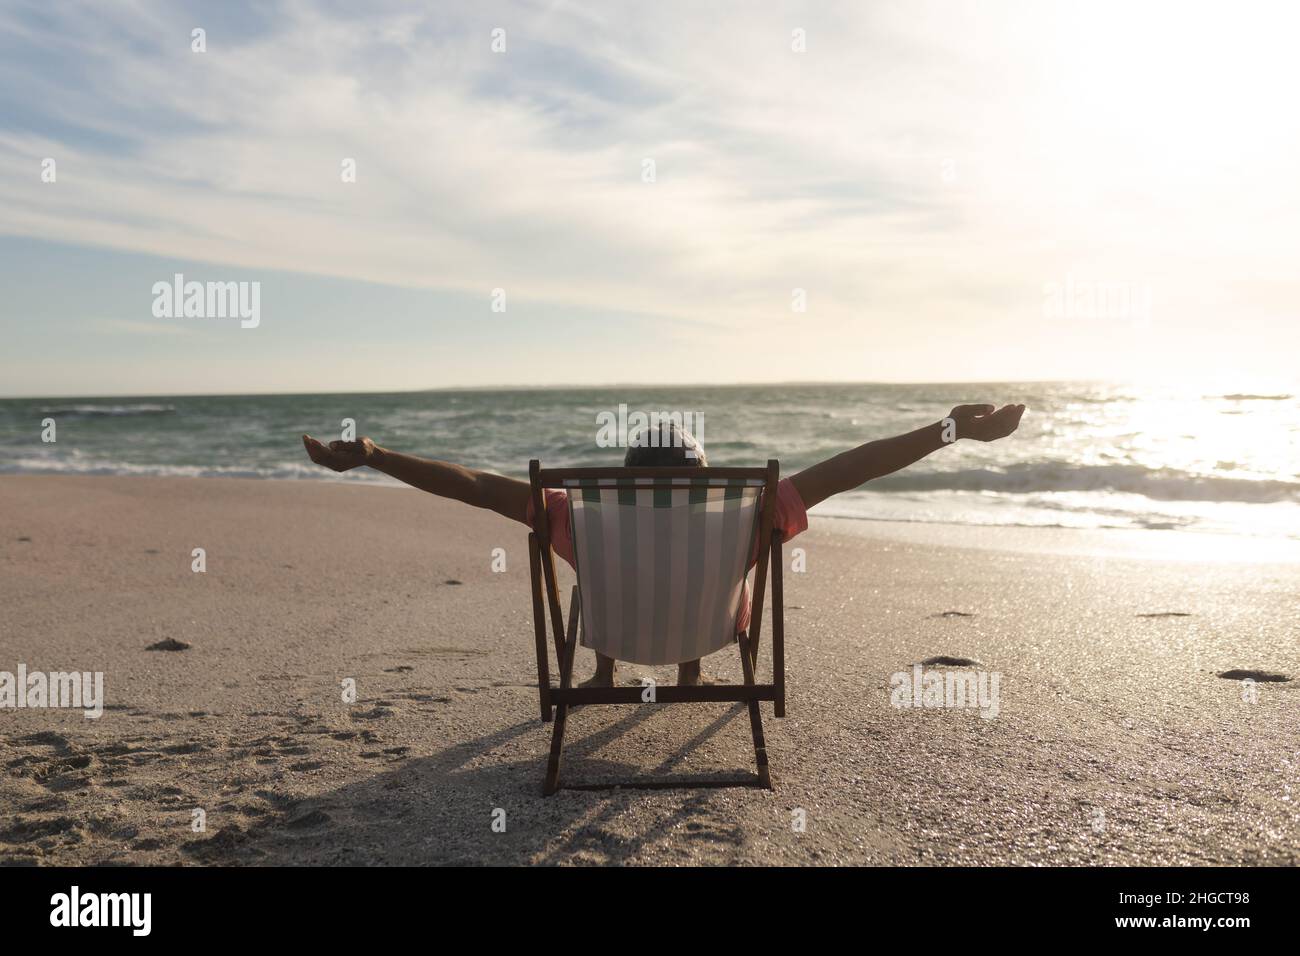 Pensionierter älterer Birazialmann mit ausgestreckten Armen, der während des Sonnenuntergangs auf einem Klappstuhl am Strand sitzt Stockfoto